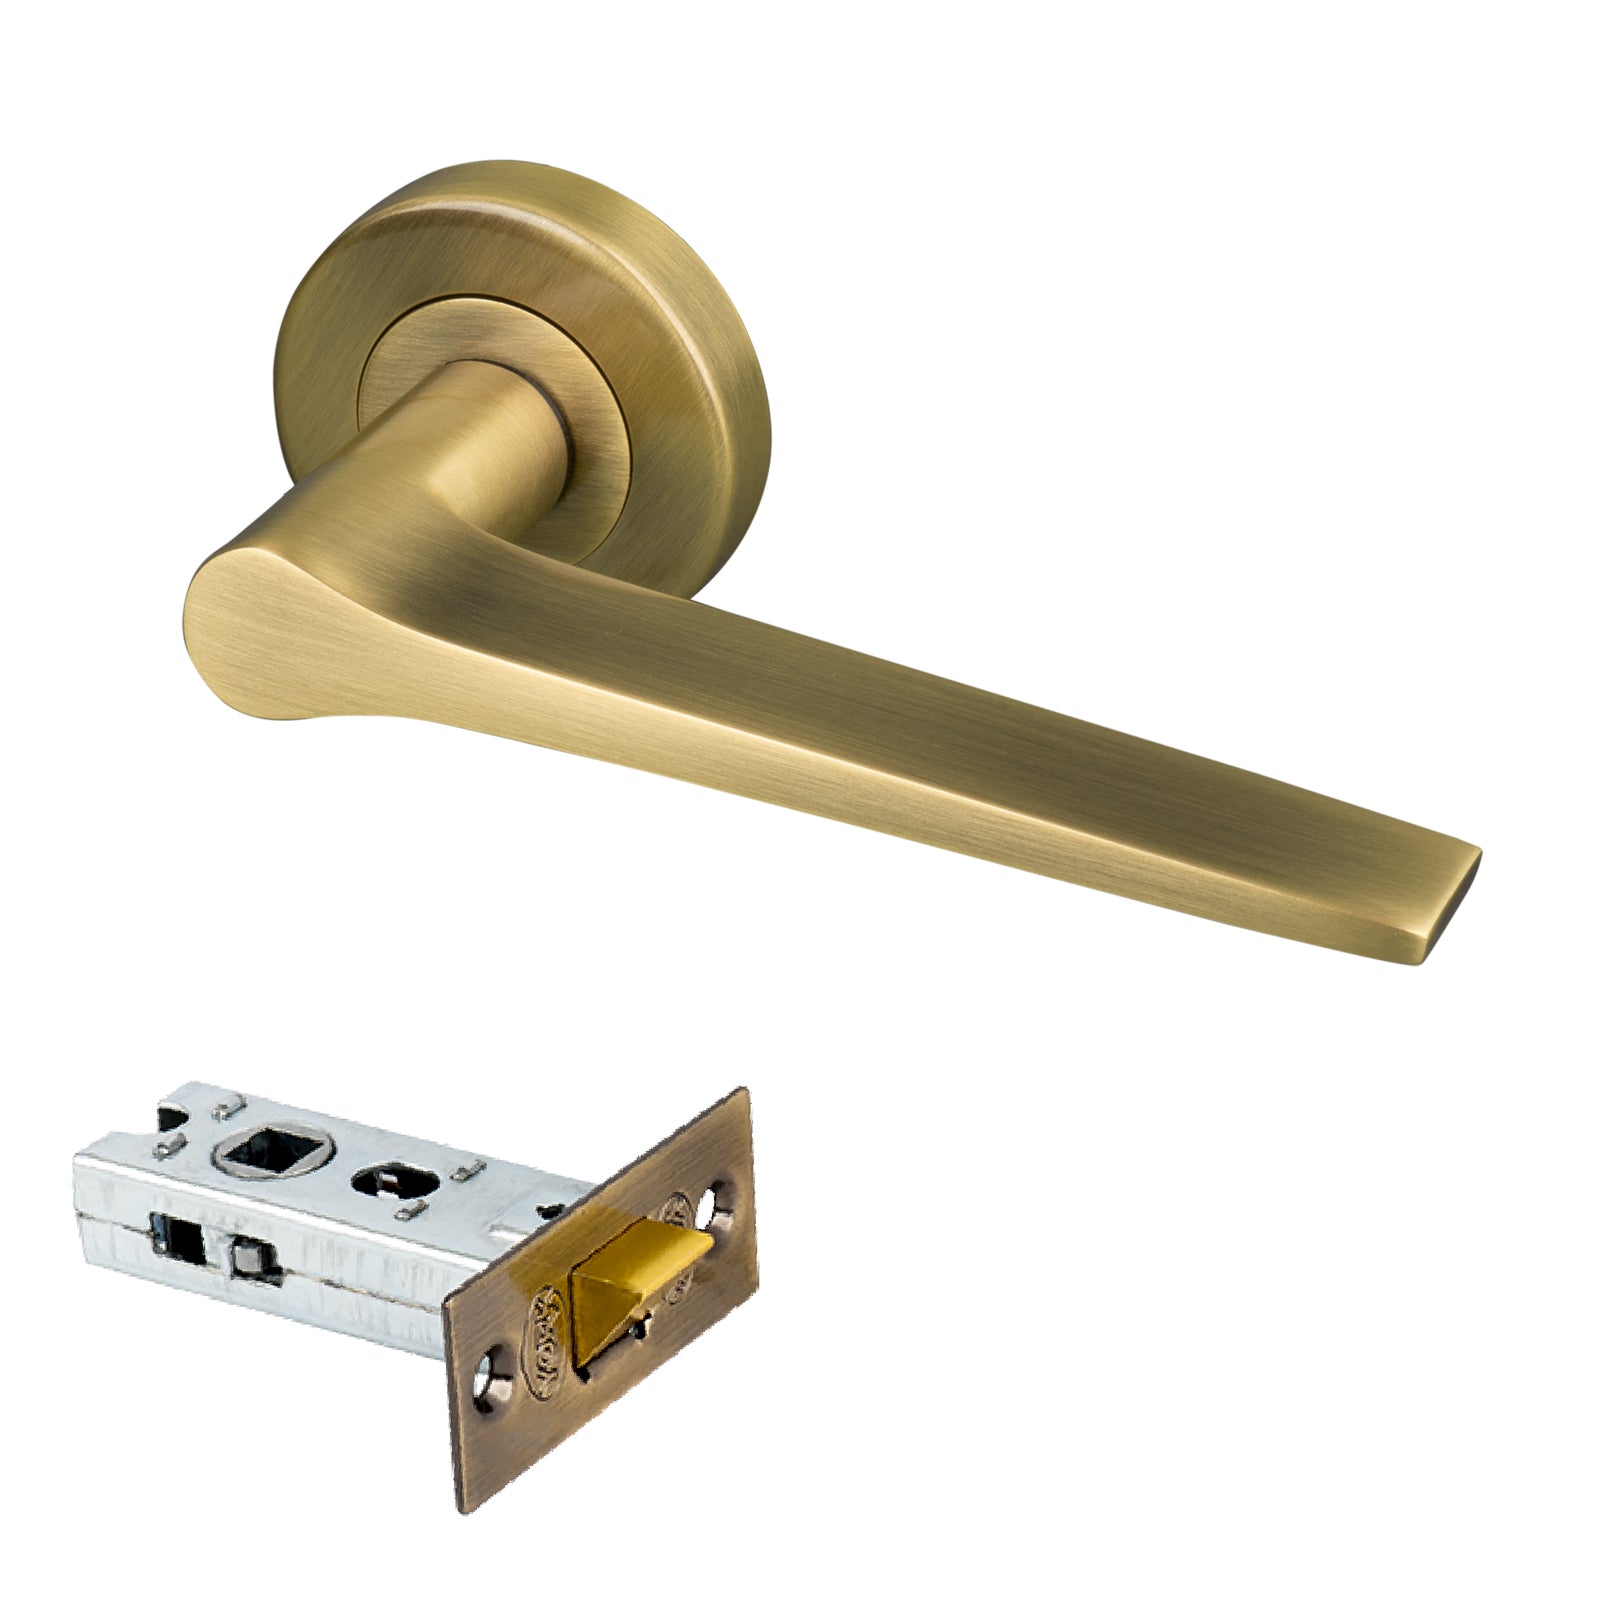 aged brass Gio round rose door handles 2.5 inch latch set